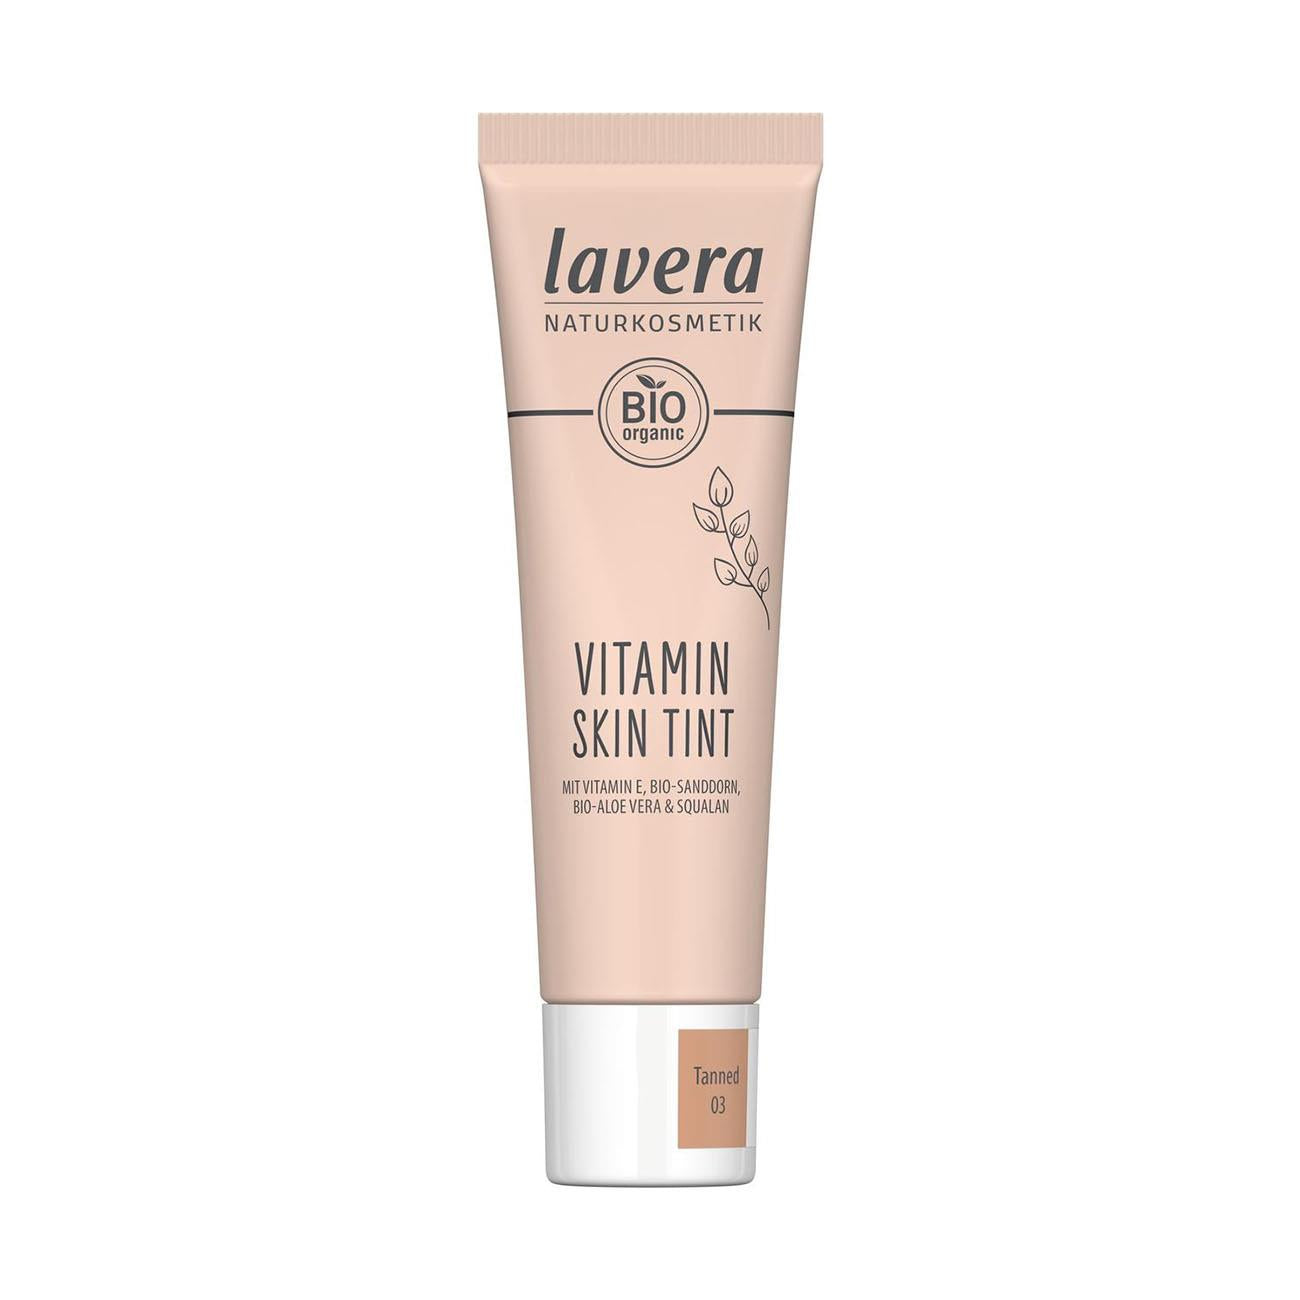 Organic Tanned 03 Vitamin Skin Tint New 30ml